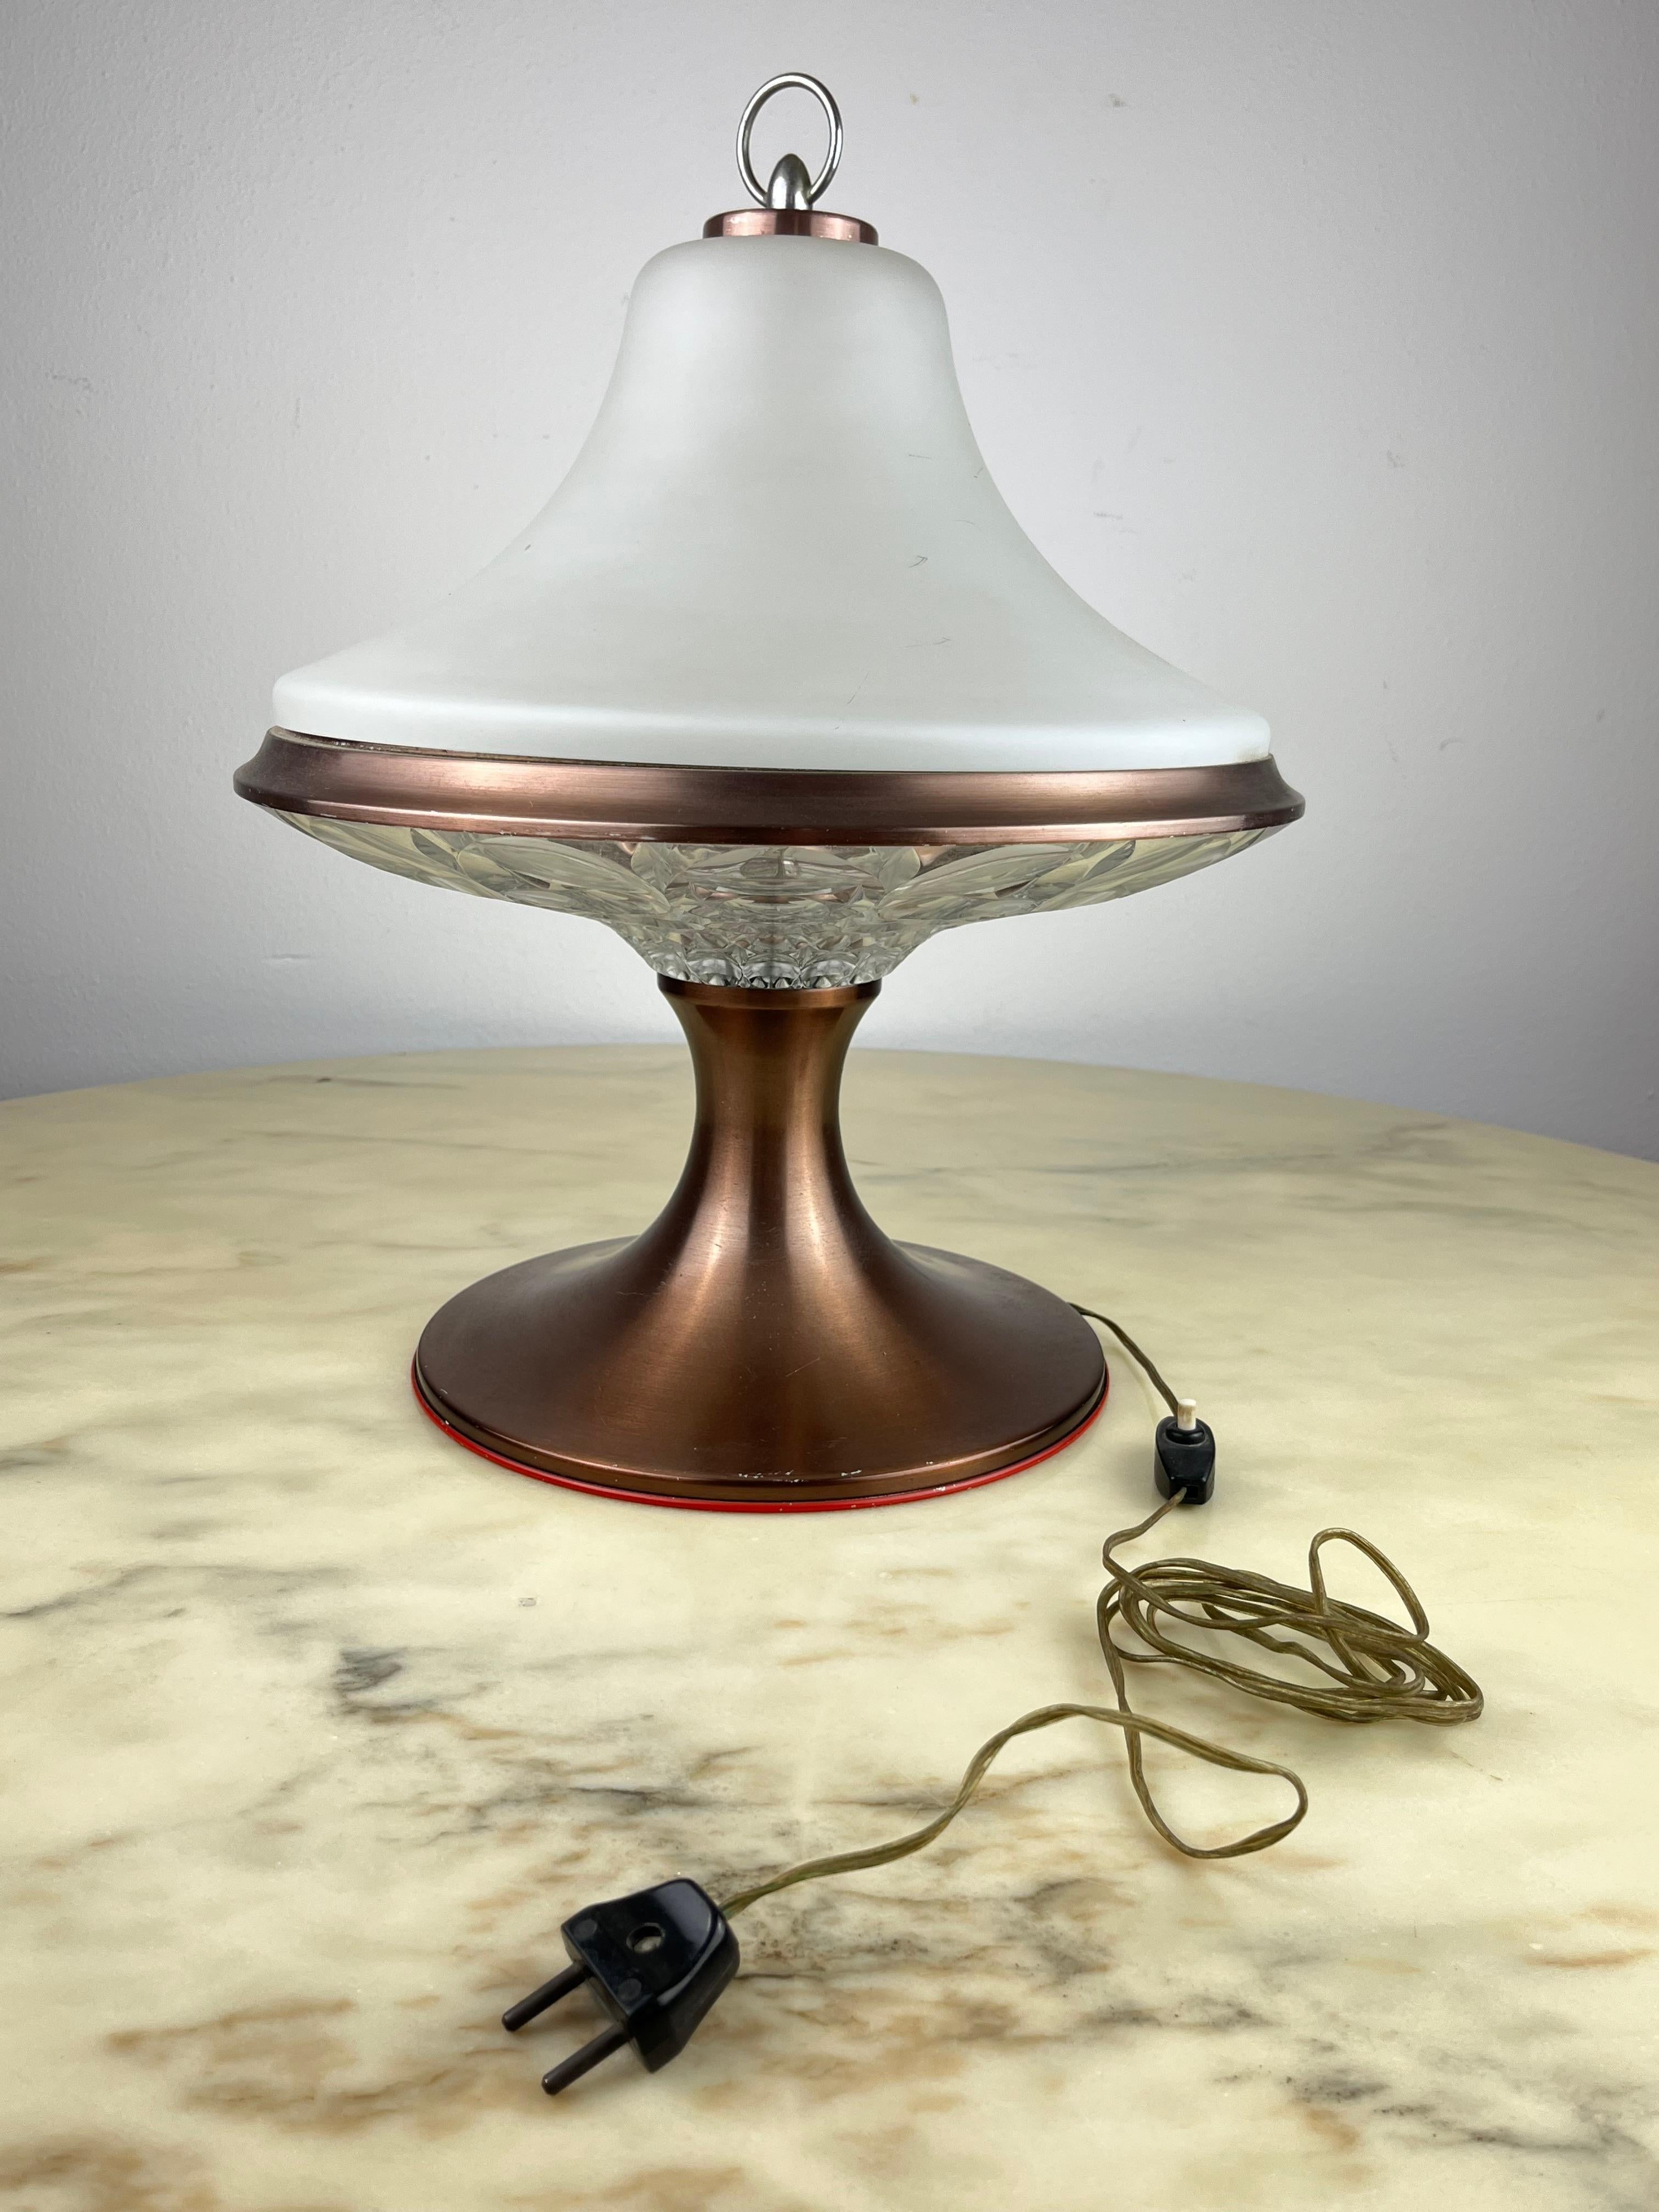 Lampe de table en verre de Murano, Italie, années 1960.
Trouvé dans un bureau de notaire.
Petite cassure (à peine visible) du verre opale supérieur, comme le montre la photo ci-jointe.
Le contraste entre les deux types de verre est magnifique. La